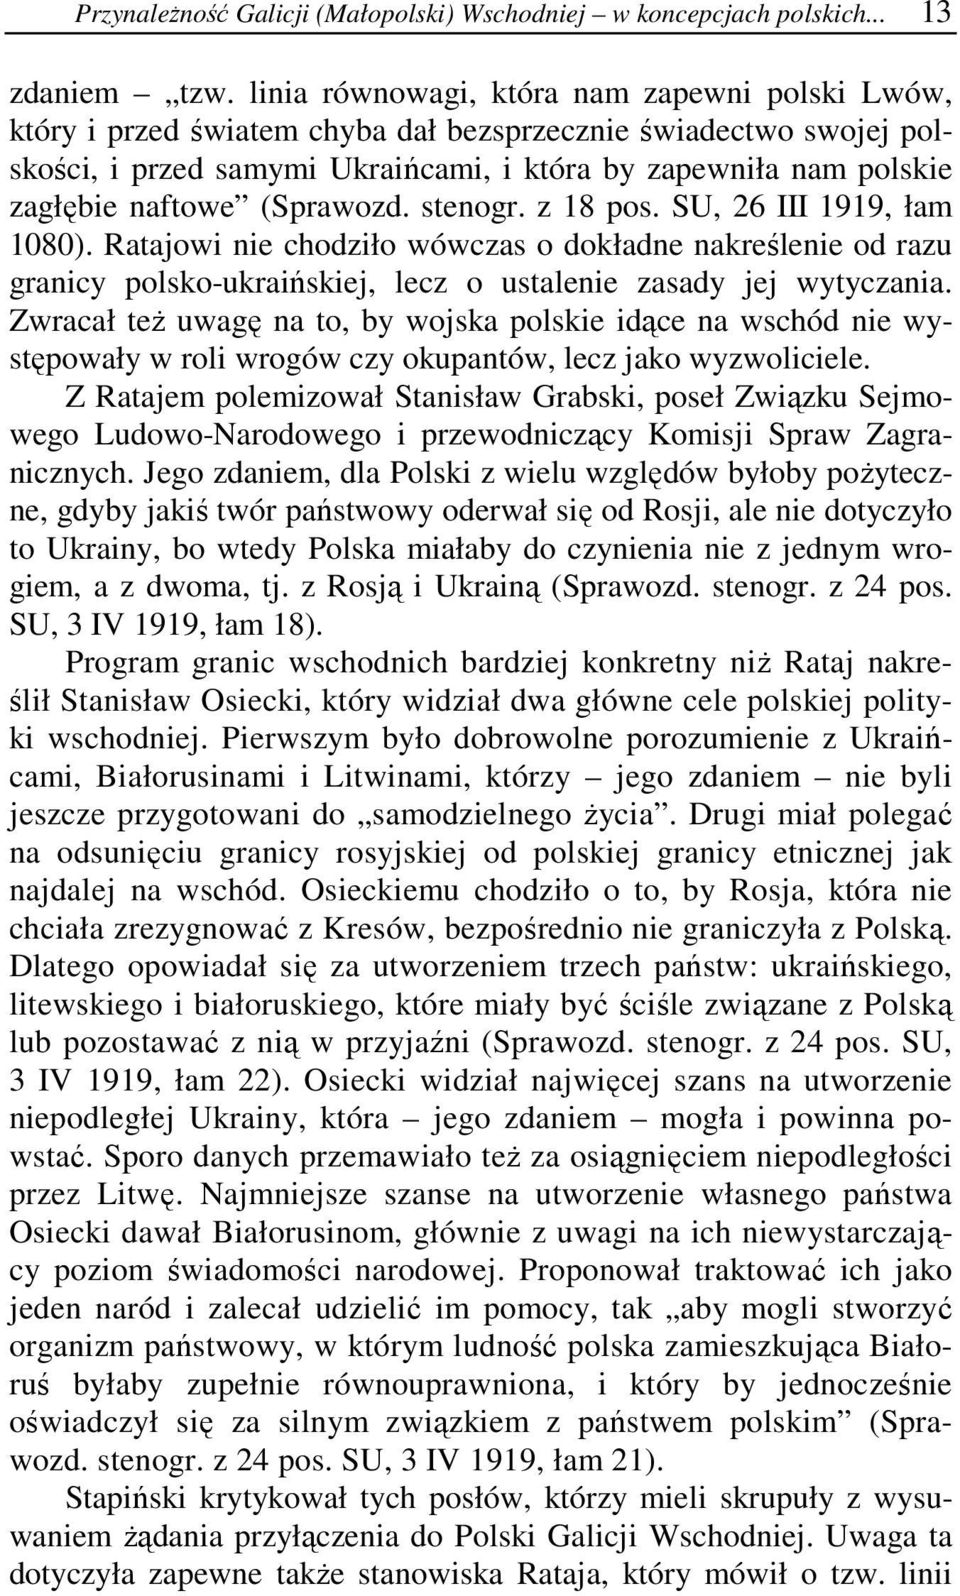 (Sprawozd. stenogr. z 18 pos. SU, 26 III 1919, łam 1080). Ratajowi nie chodziło wówczas o dokładne nakreślenie od razu granicy polsko-ukraińskiej, lecz o ustalenie zasady jej wytyczania.